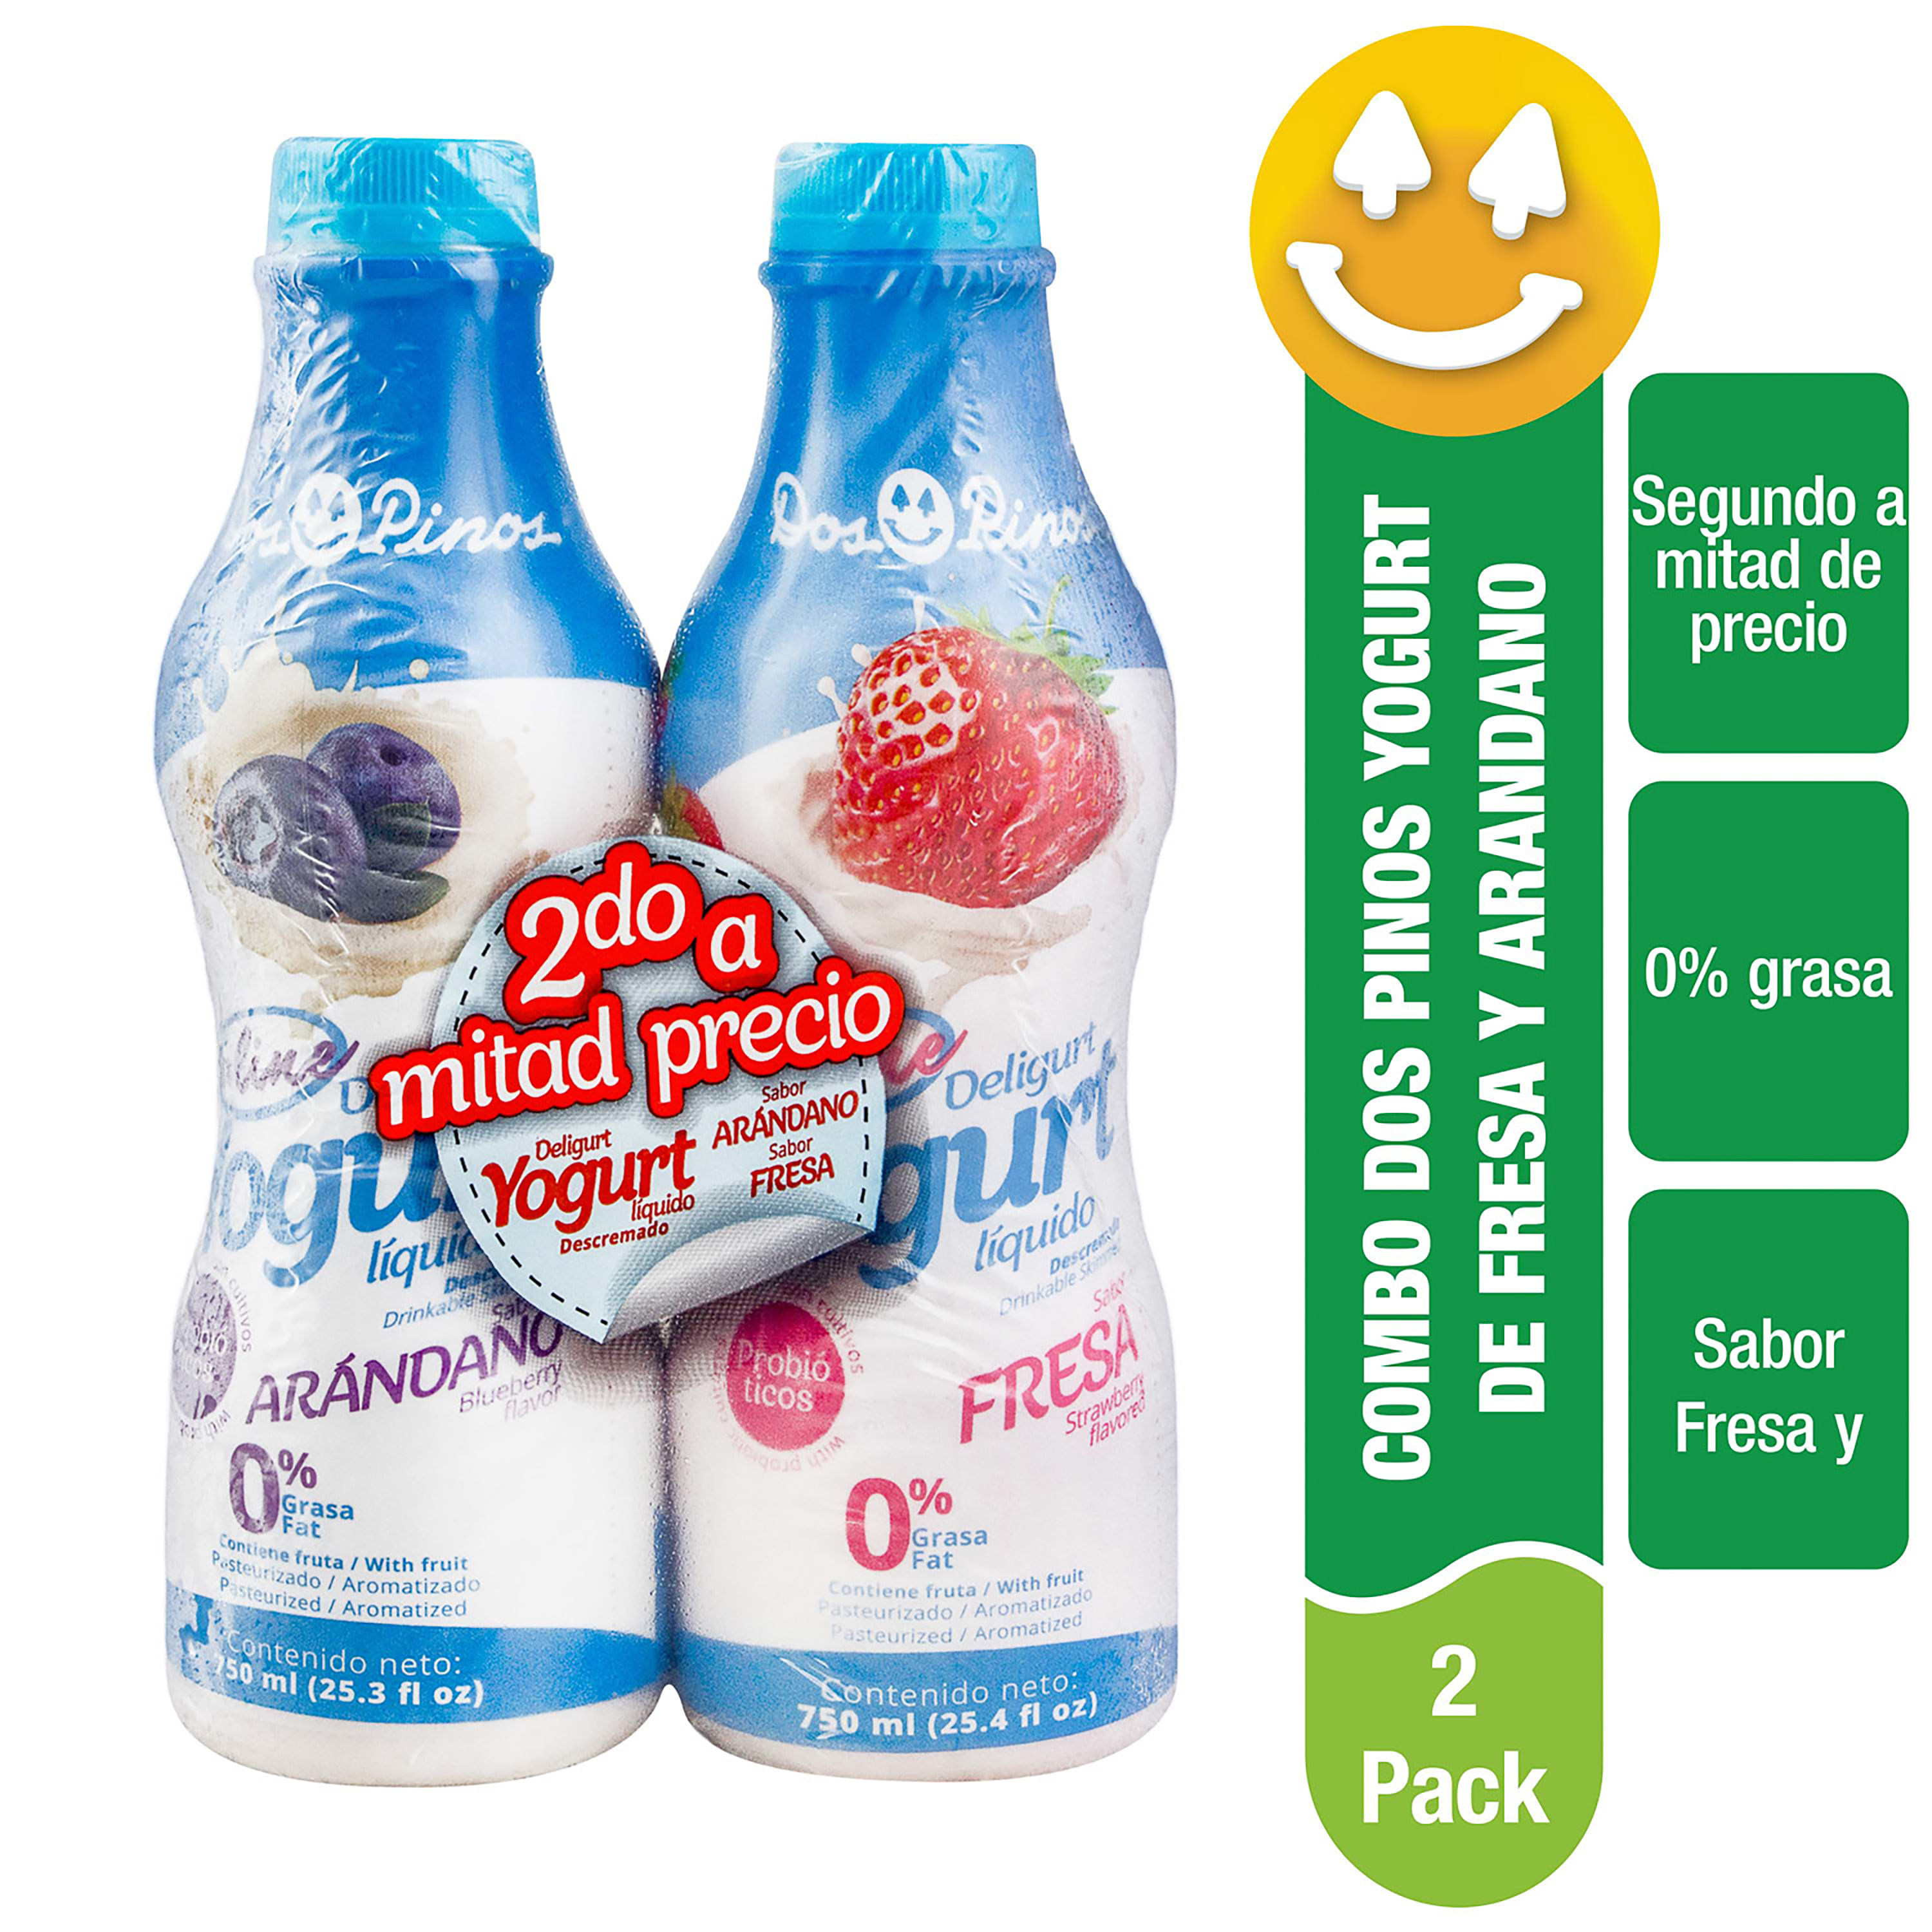 Nuevo yogur líquido – Metro Puerto Rico